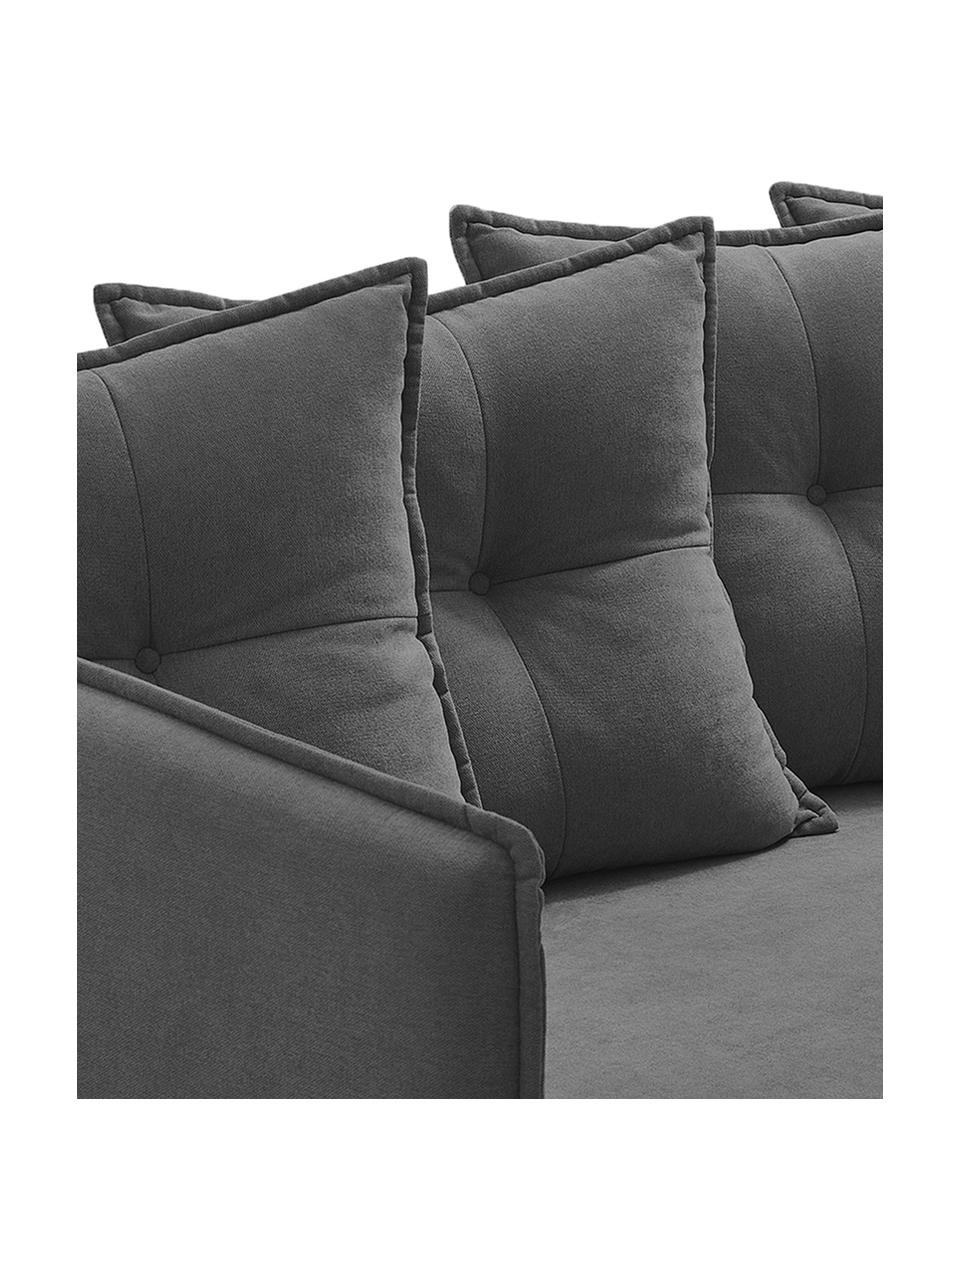 Sofa rozkładana z aksamitu Opti (4-osobowa), Tapicerka: 100% aksamit poliestrowy, Nogi: metal lakierowany, Ciemny szary, S 264 x G 103 cm